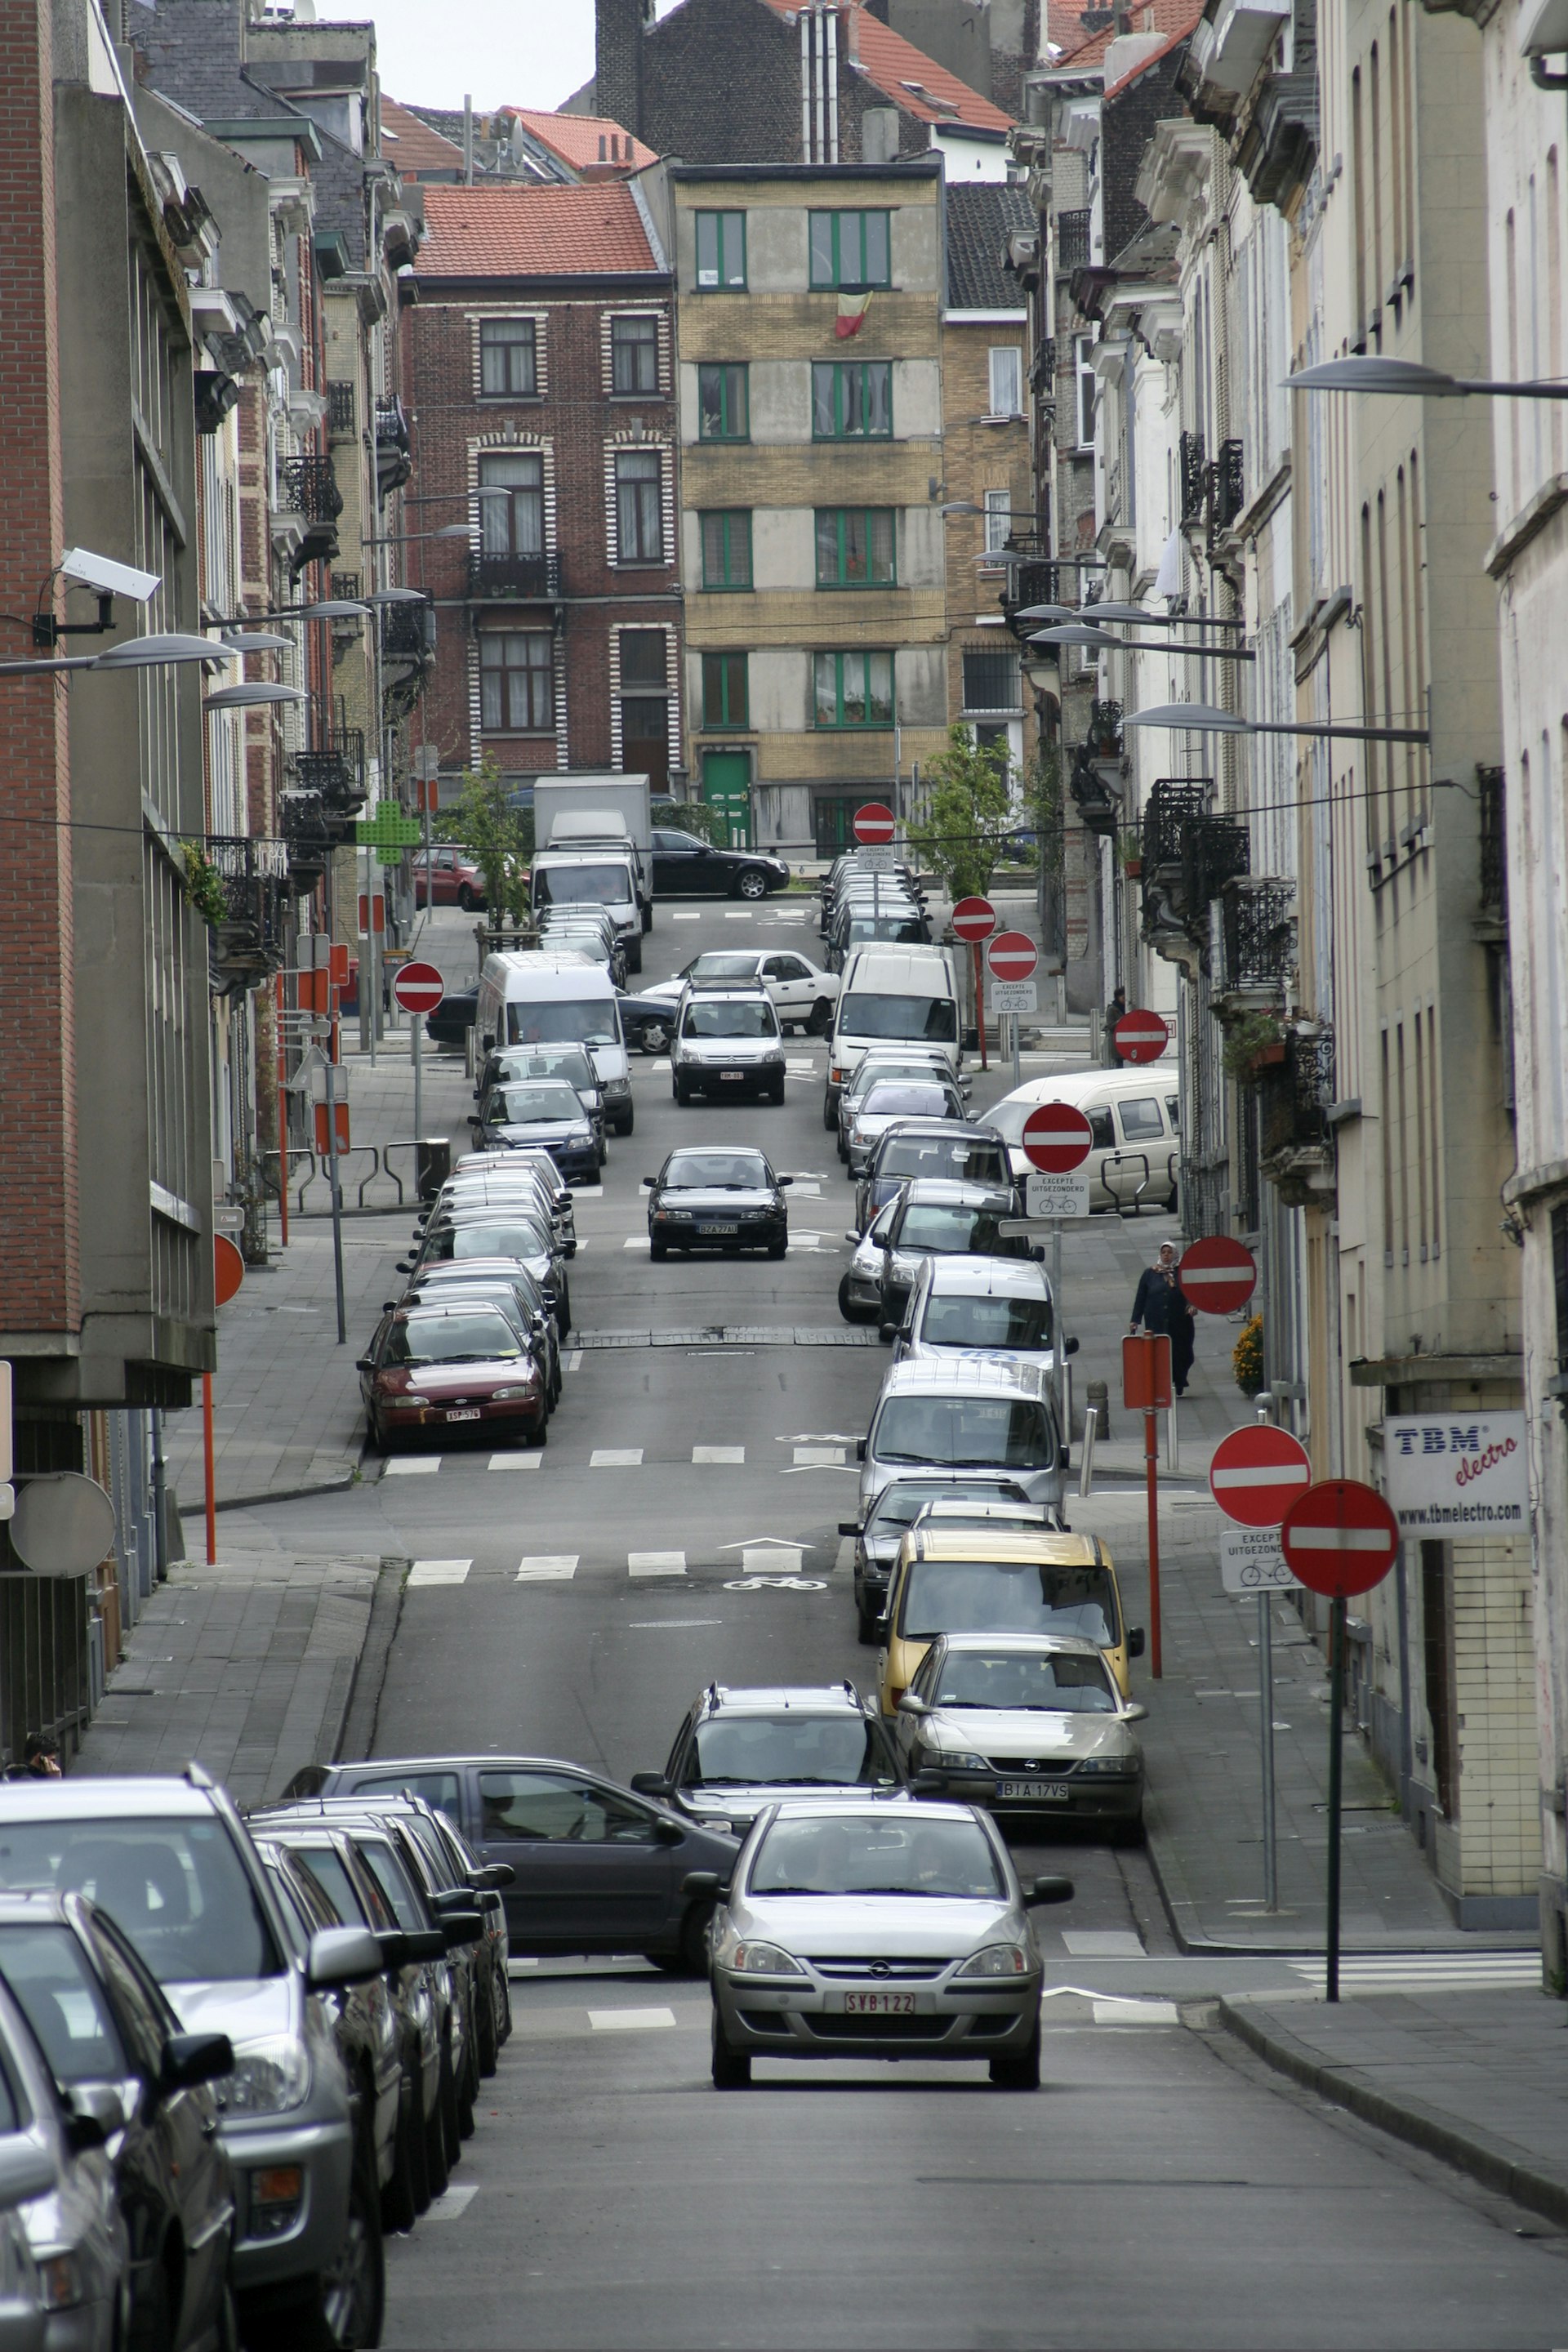 Brussels street scene